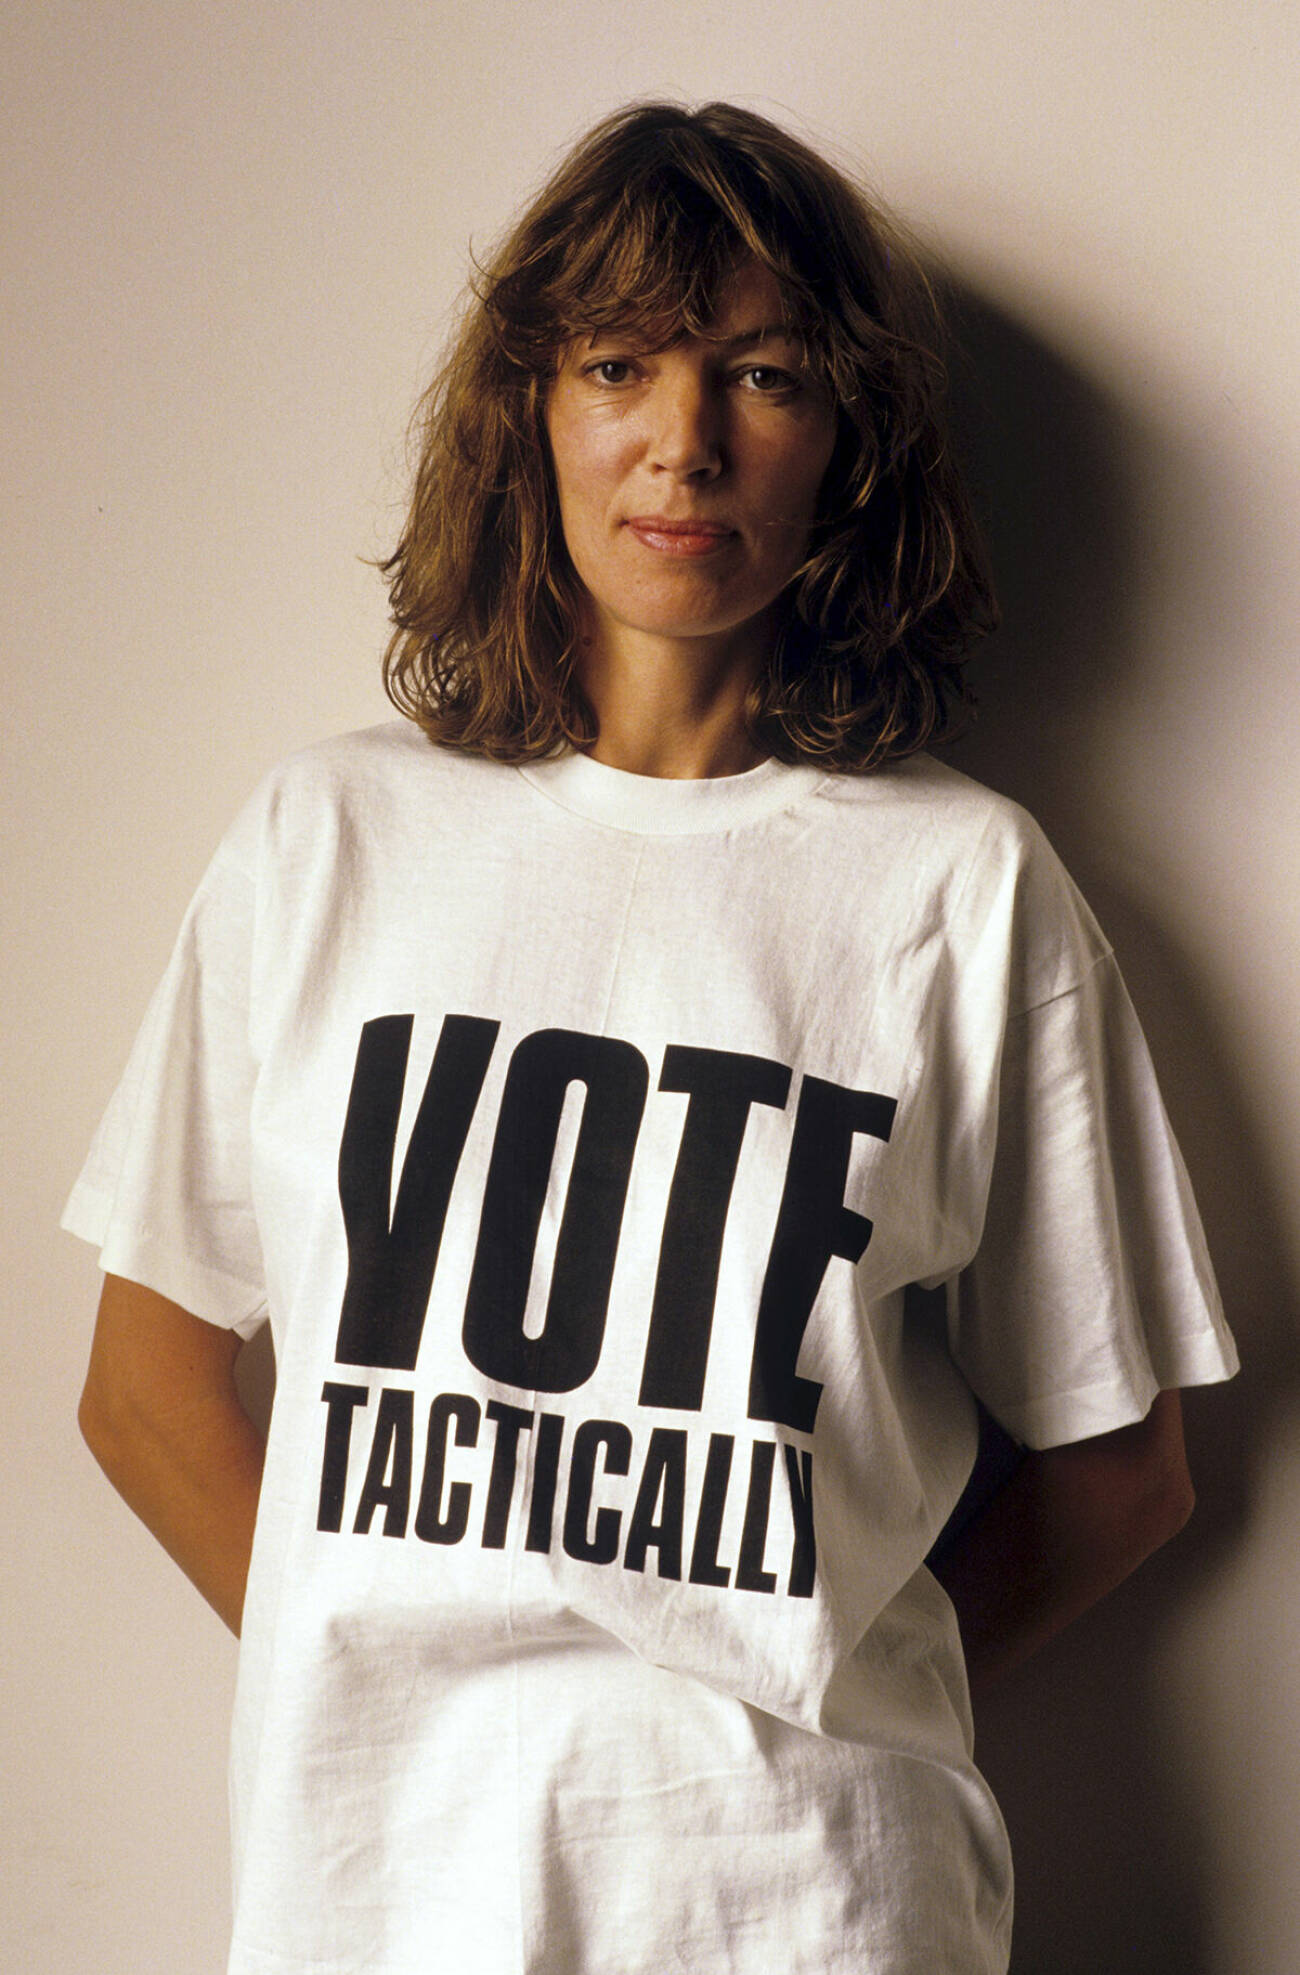 Katharine Hamnet med en t-shirt med trycket "Vote tactically"